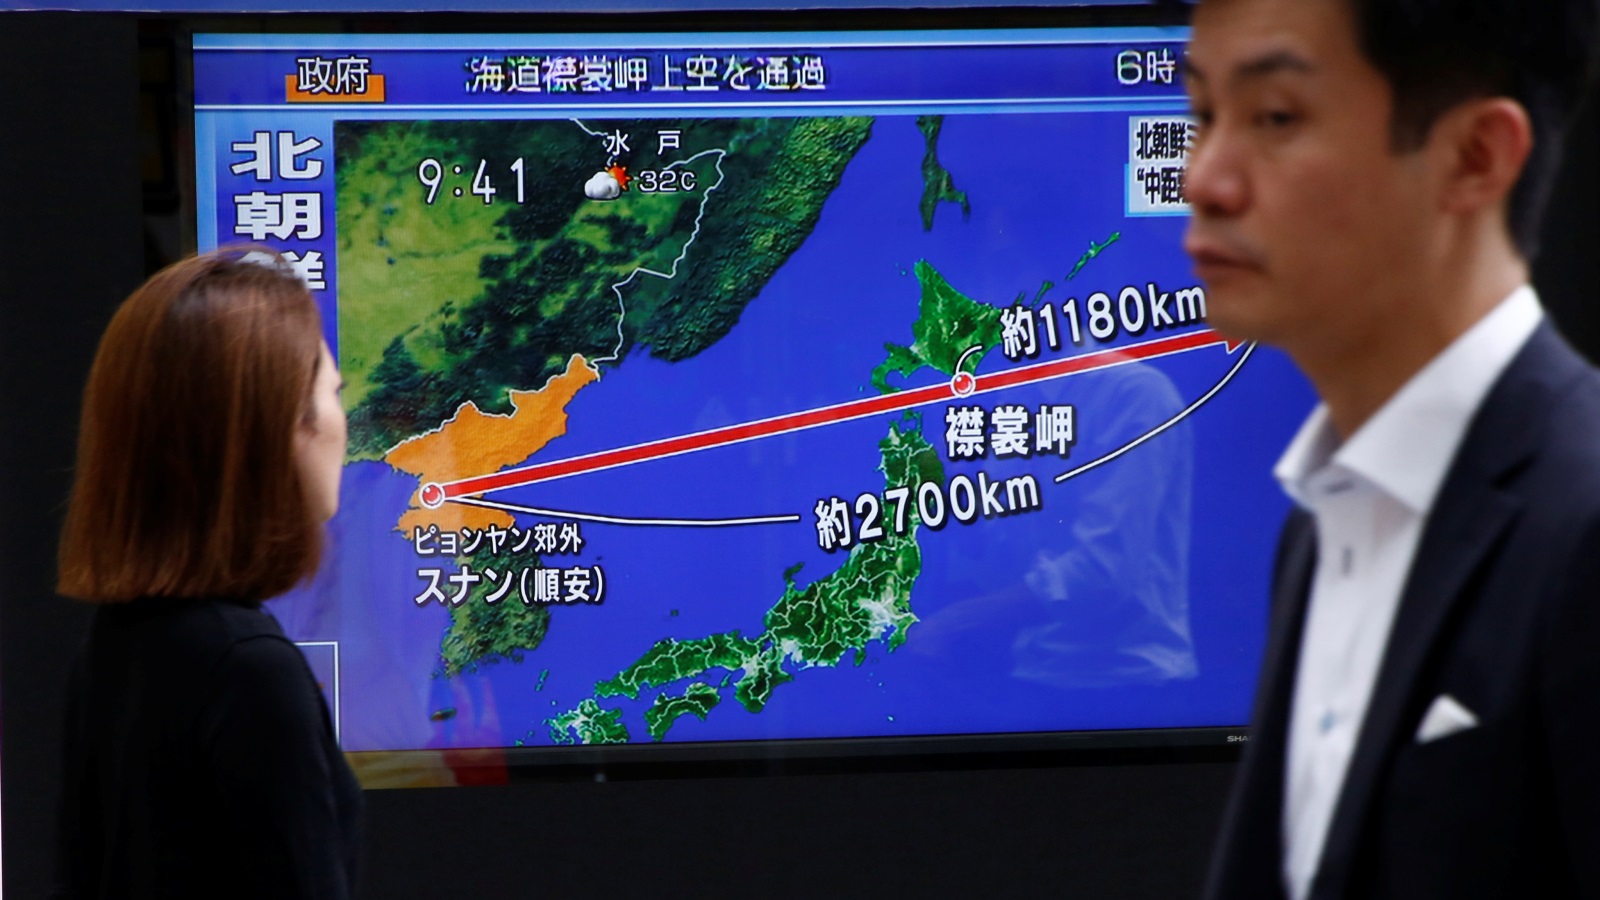 ‪مسار الصاروخ الكوري الشمالي على إحدى شاشات العرض باليابان‬   مسار الصاروخ الكوري الشمالي على إحدى شاشات العرض باليابان (رويترز)